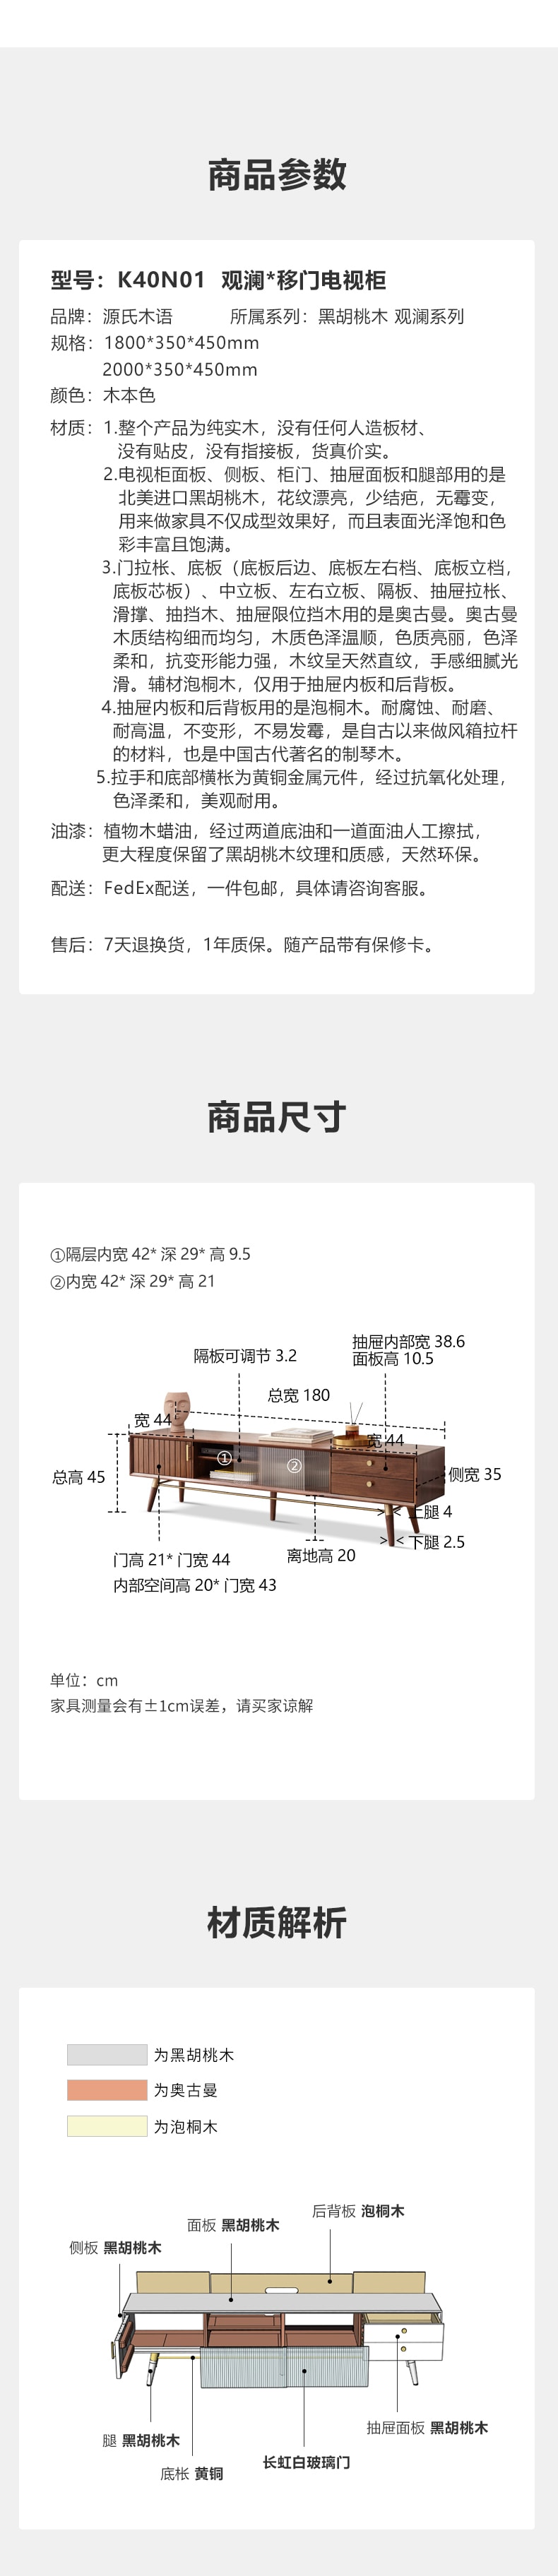 源氏木语 移门电视柜 2.0米 1pc 【中国实木家具第一品牌】